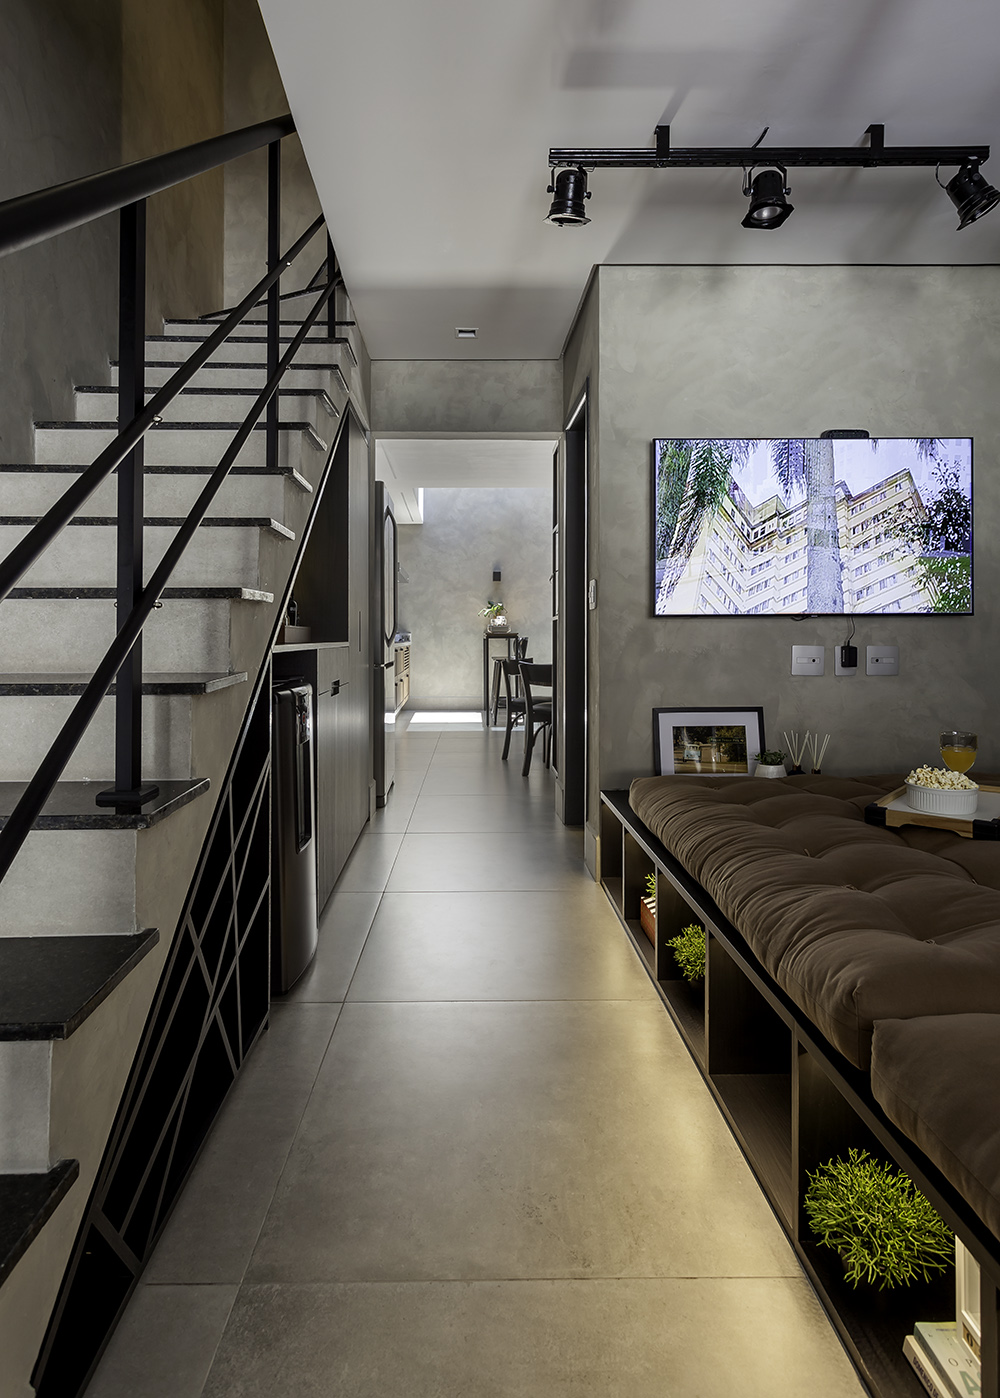 Casa de 104 m² traz soluções criativas e cheias de personalidade